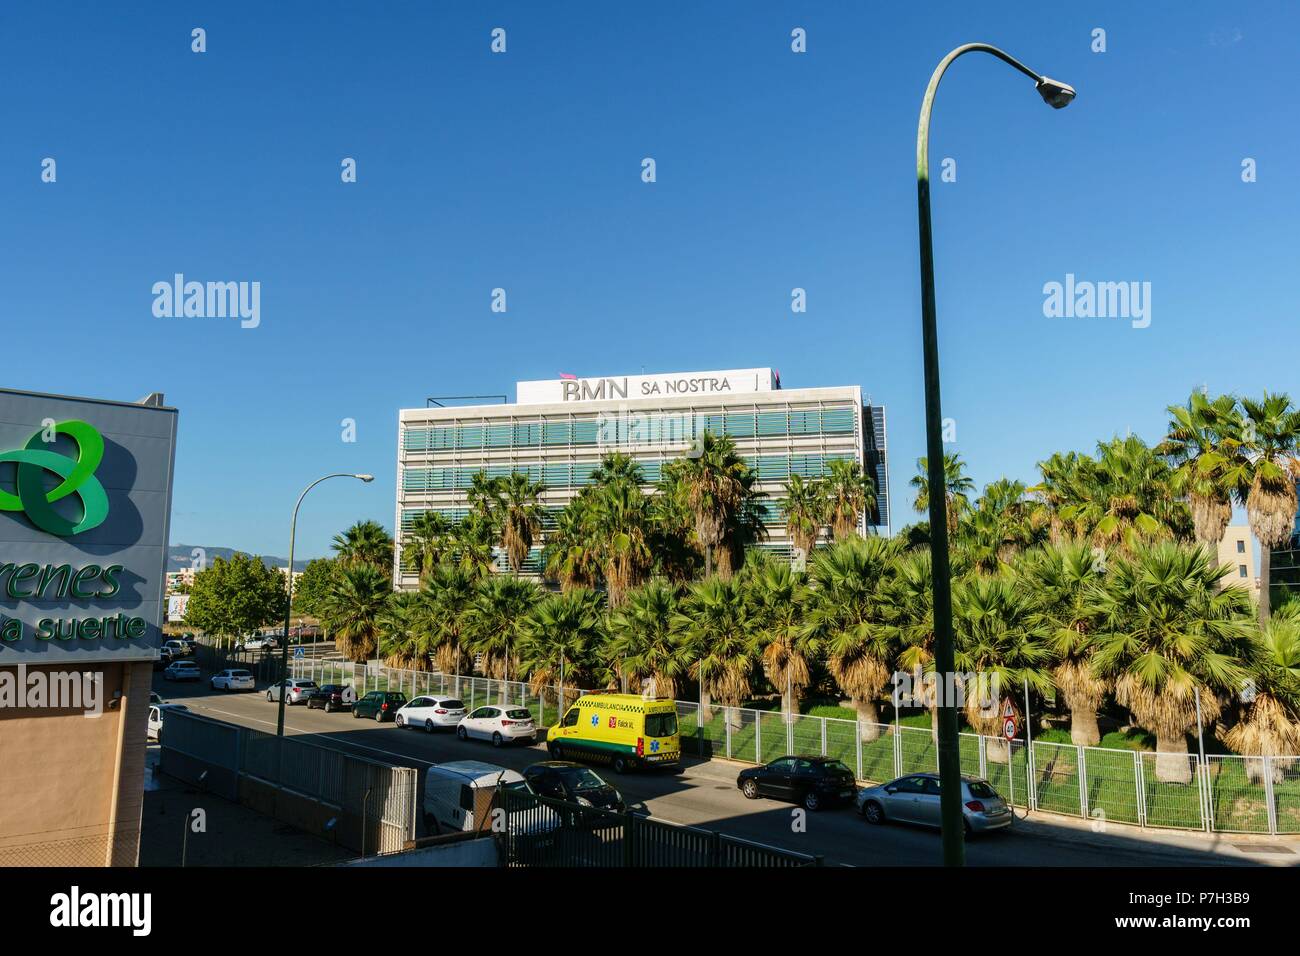 oficinas centrales del banco BMN Sa Nostra, poligono de Son Fuster, Palma,Mallorca, balearic islands, spain, europe. Stock Photo